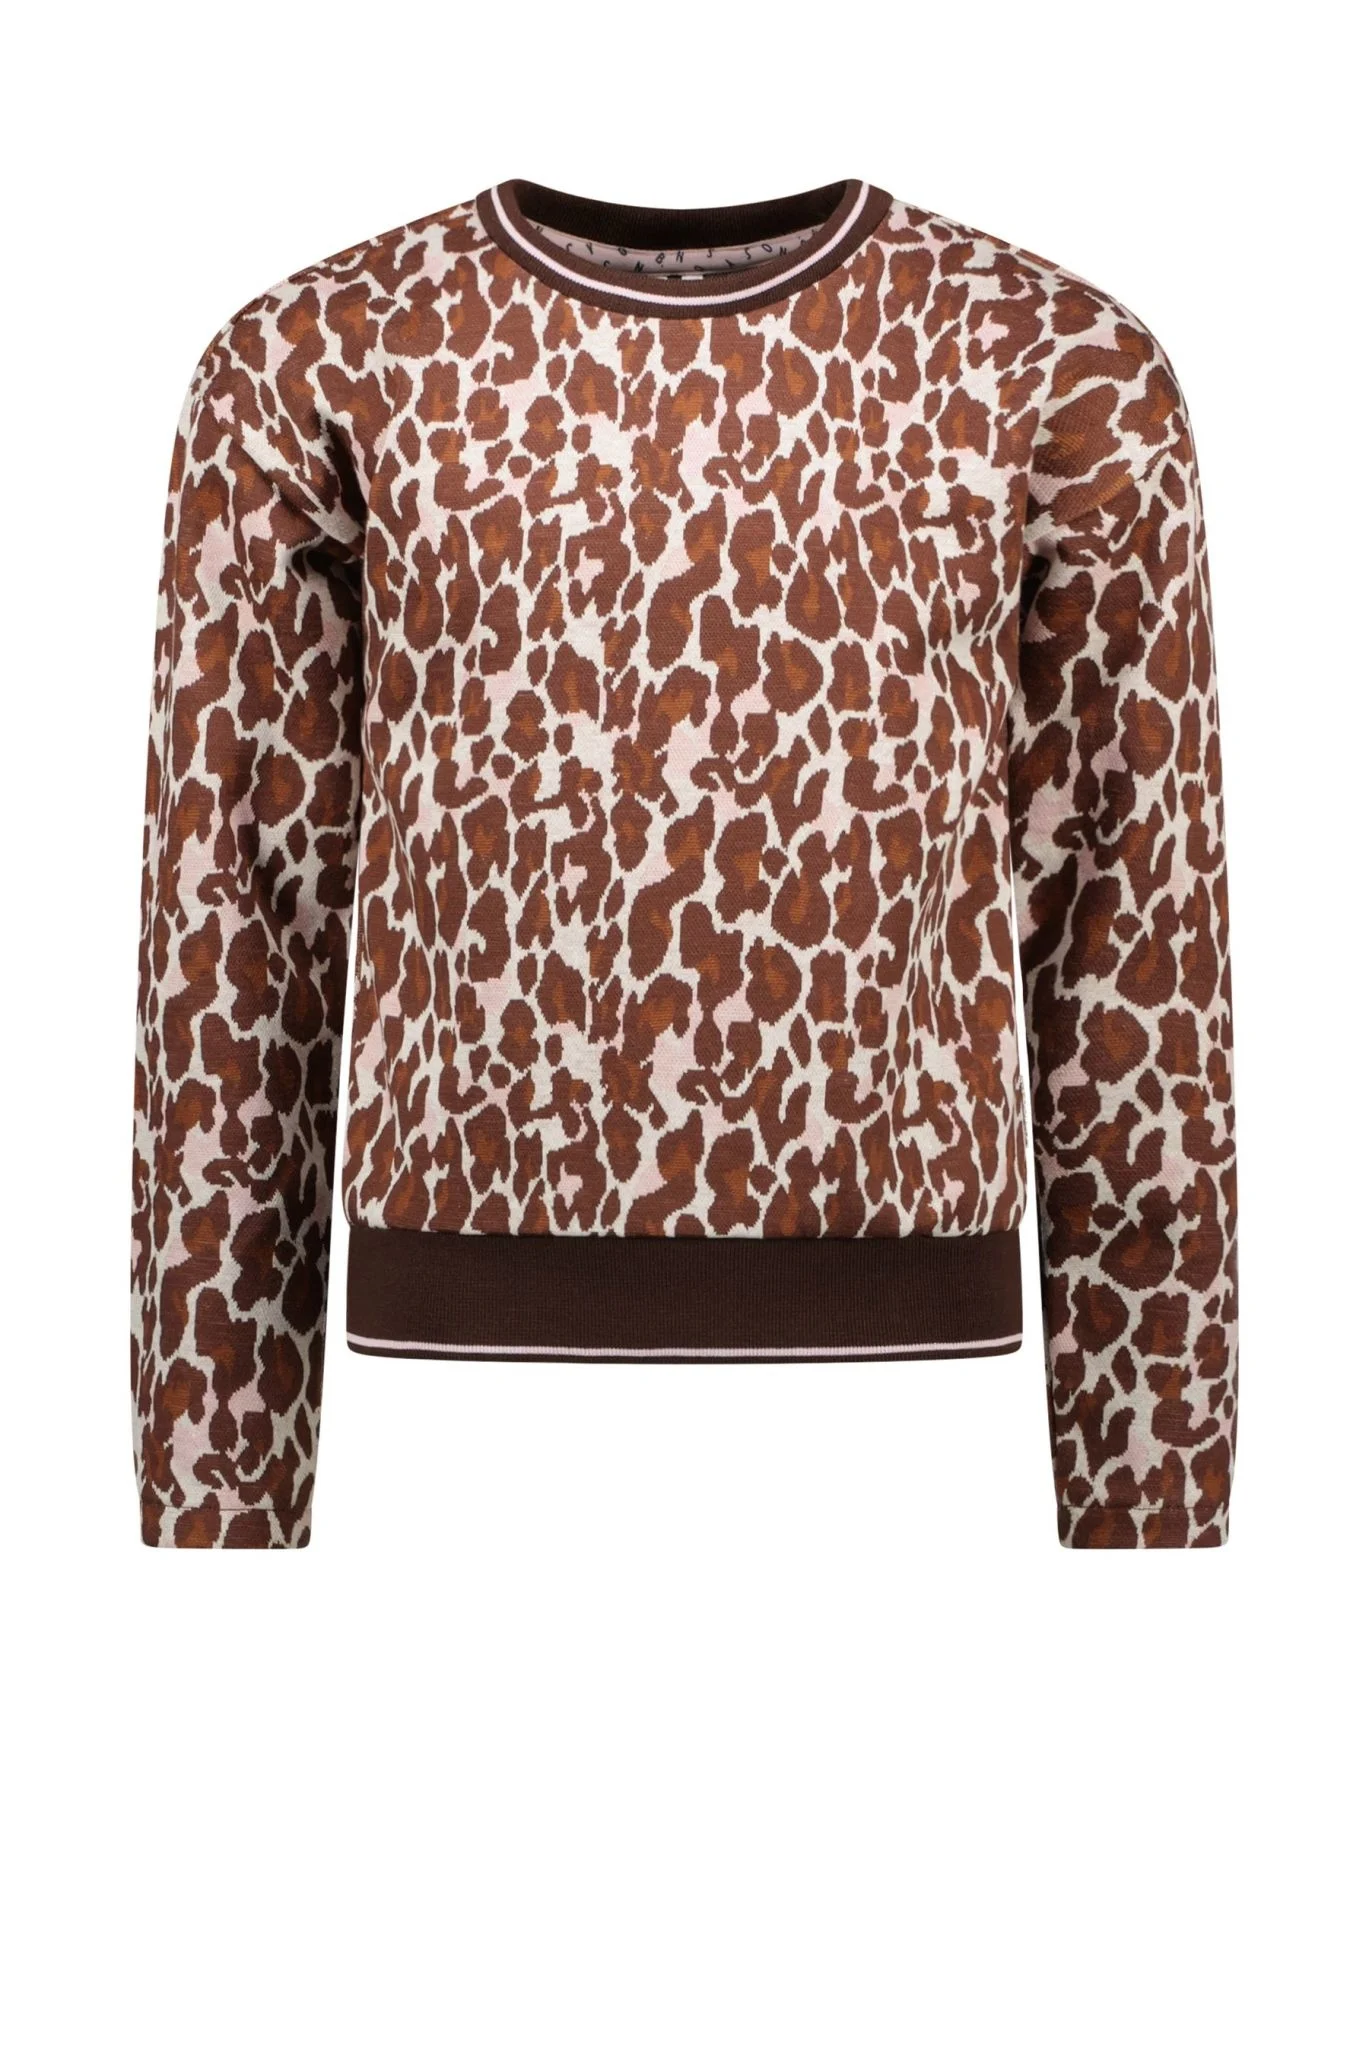 Afbeelding van B.Nosy Meisjes sweater jacquard lucky leopard